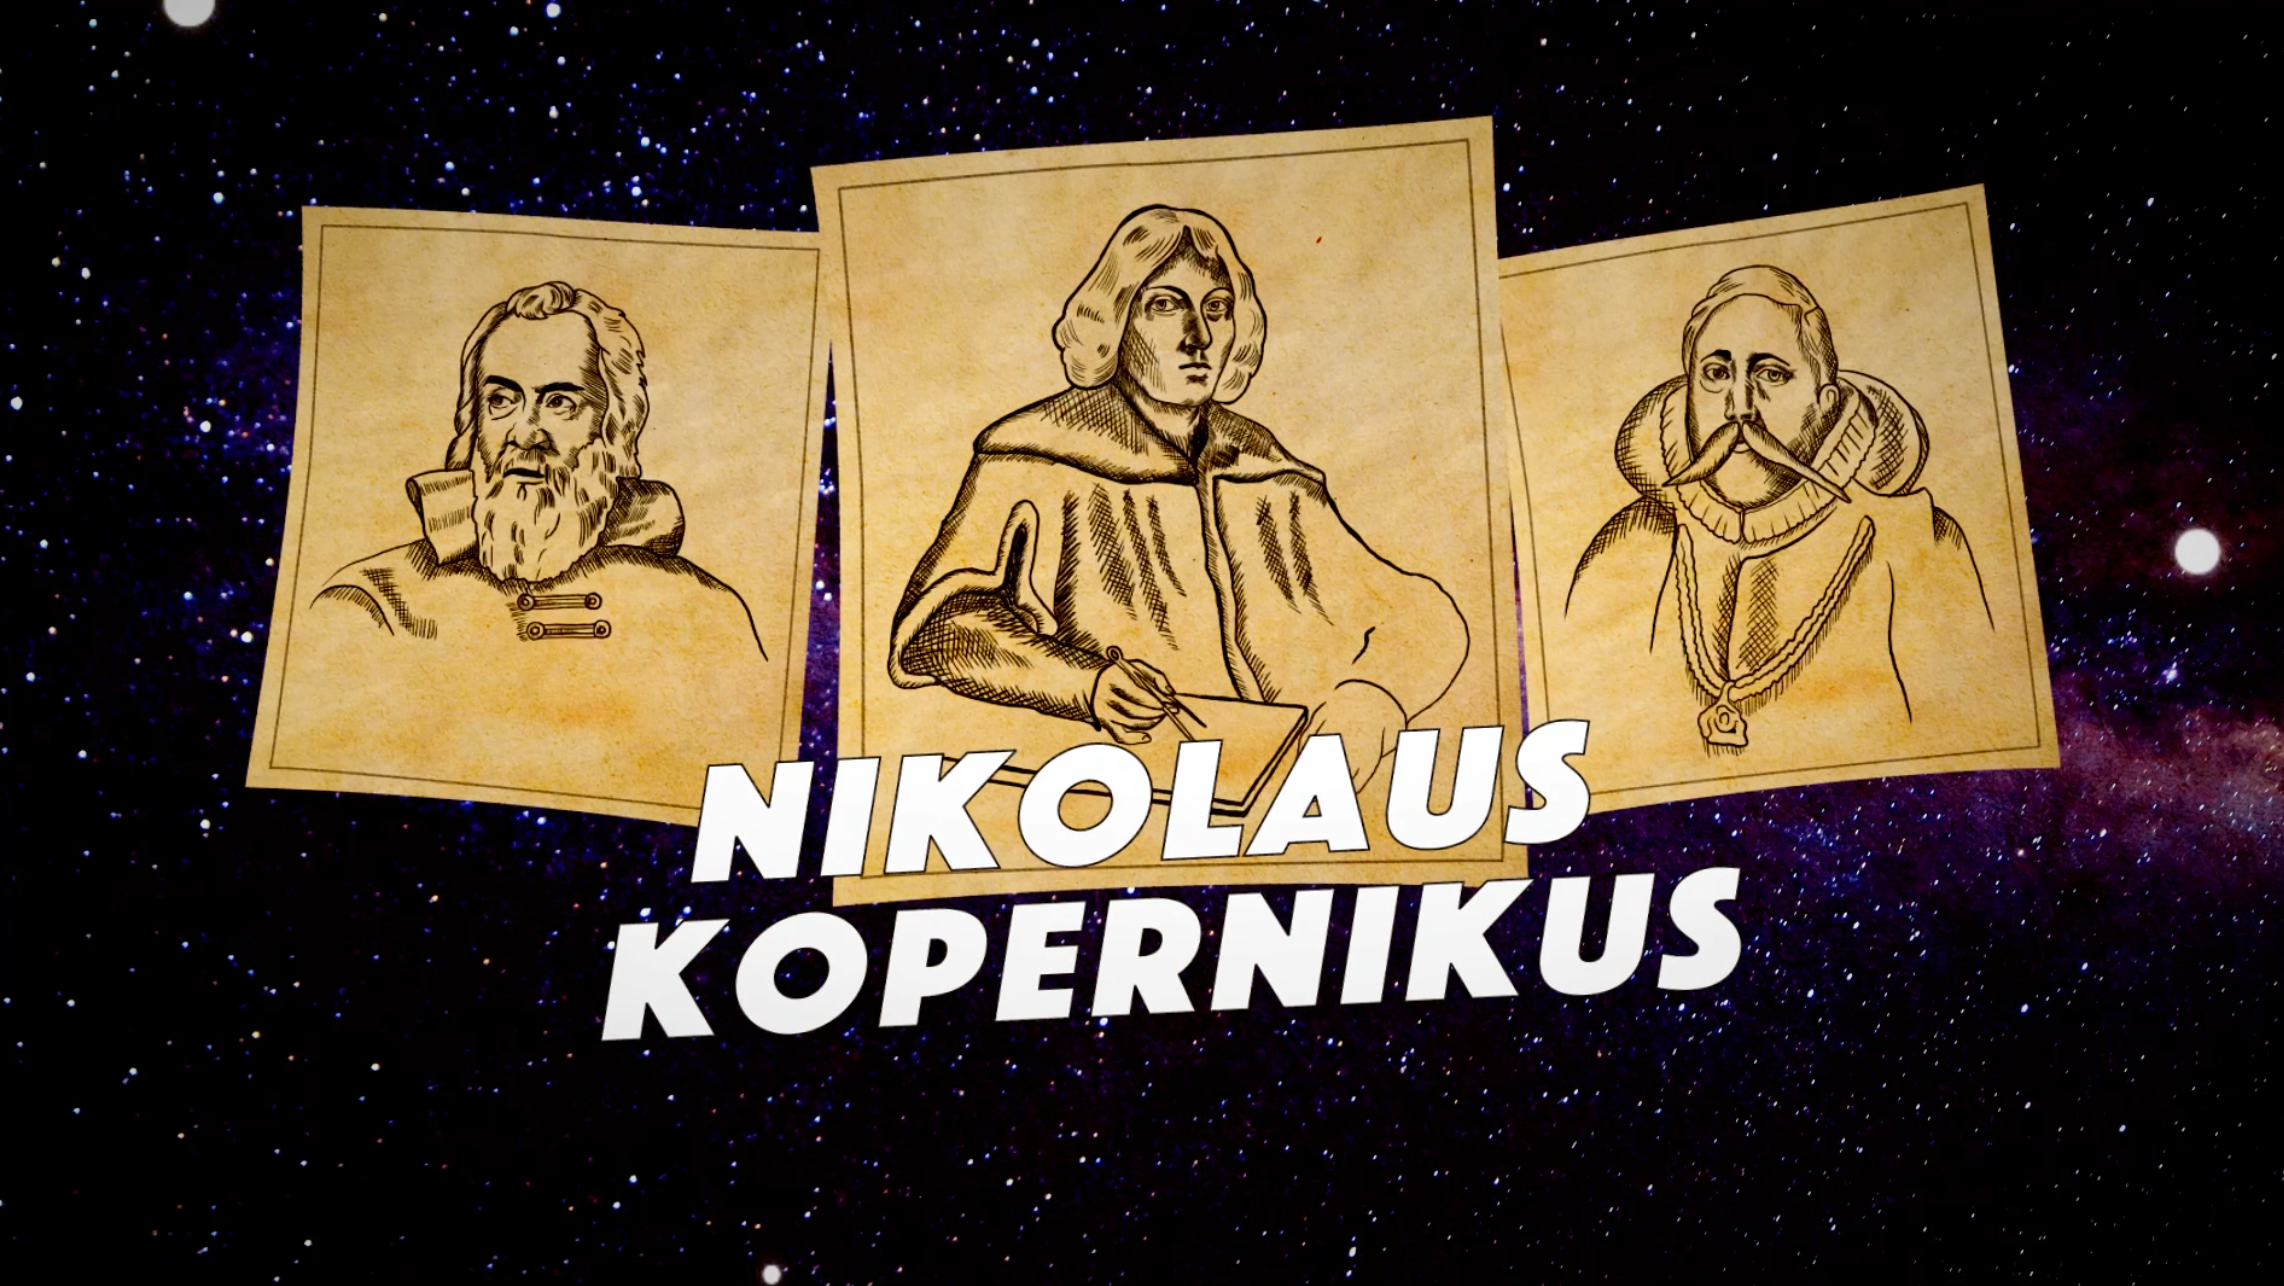 Astronomins Pionjärer – Nikolaus Kopernikus